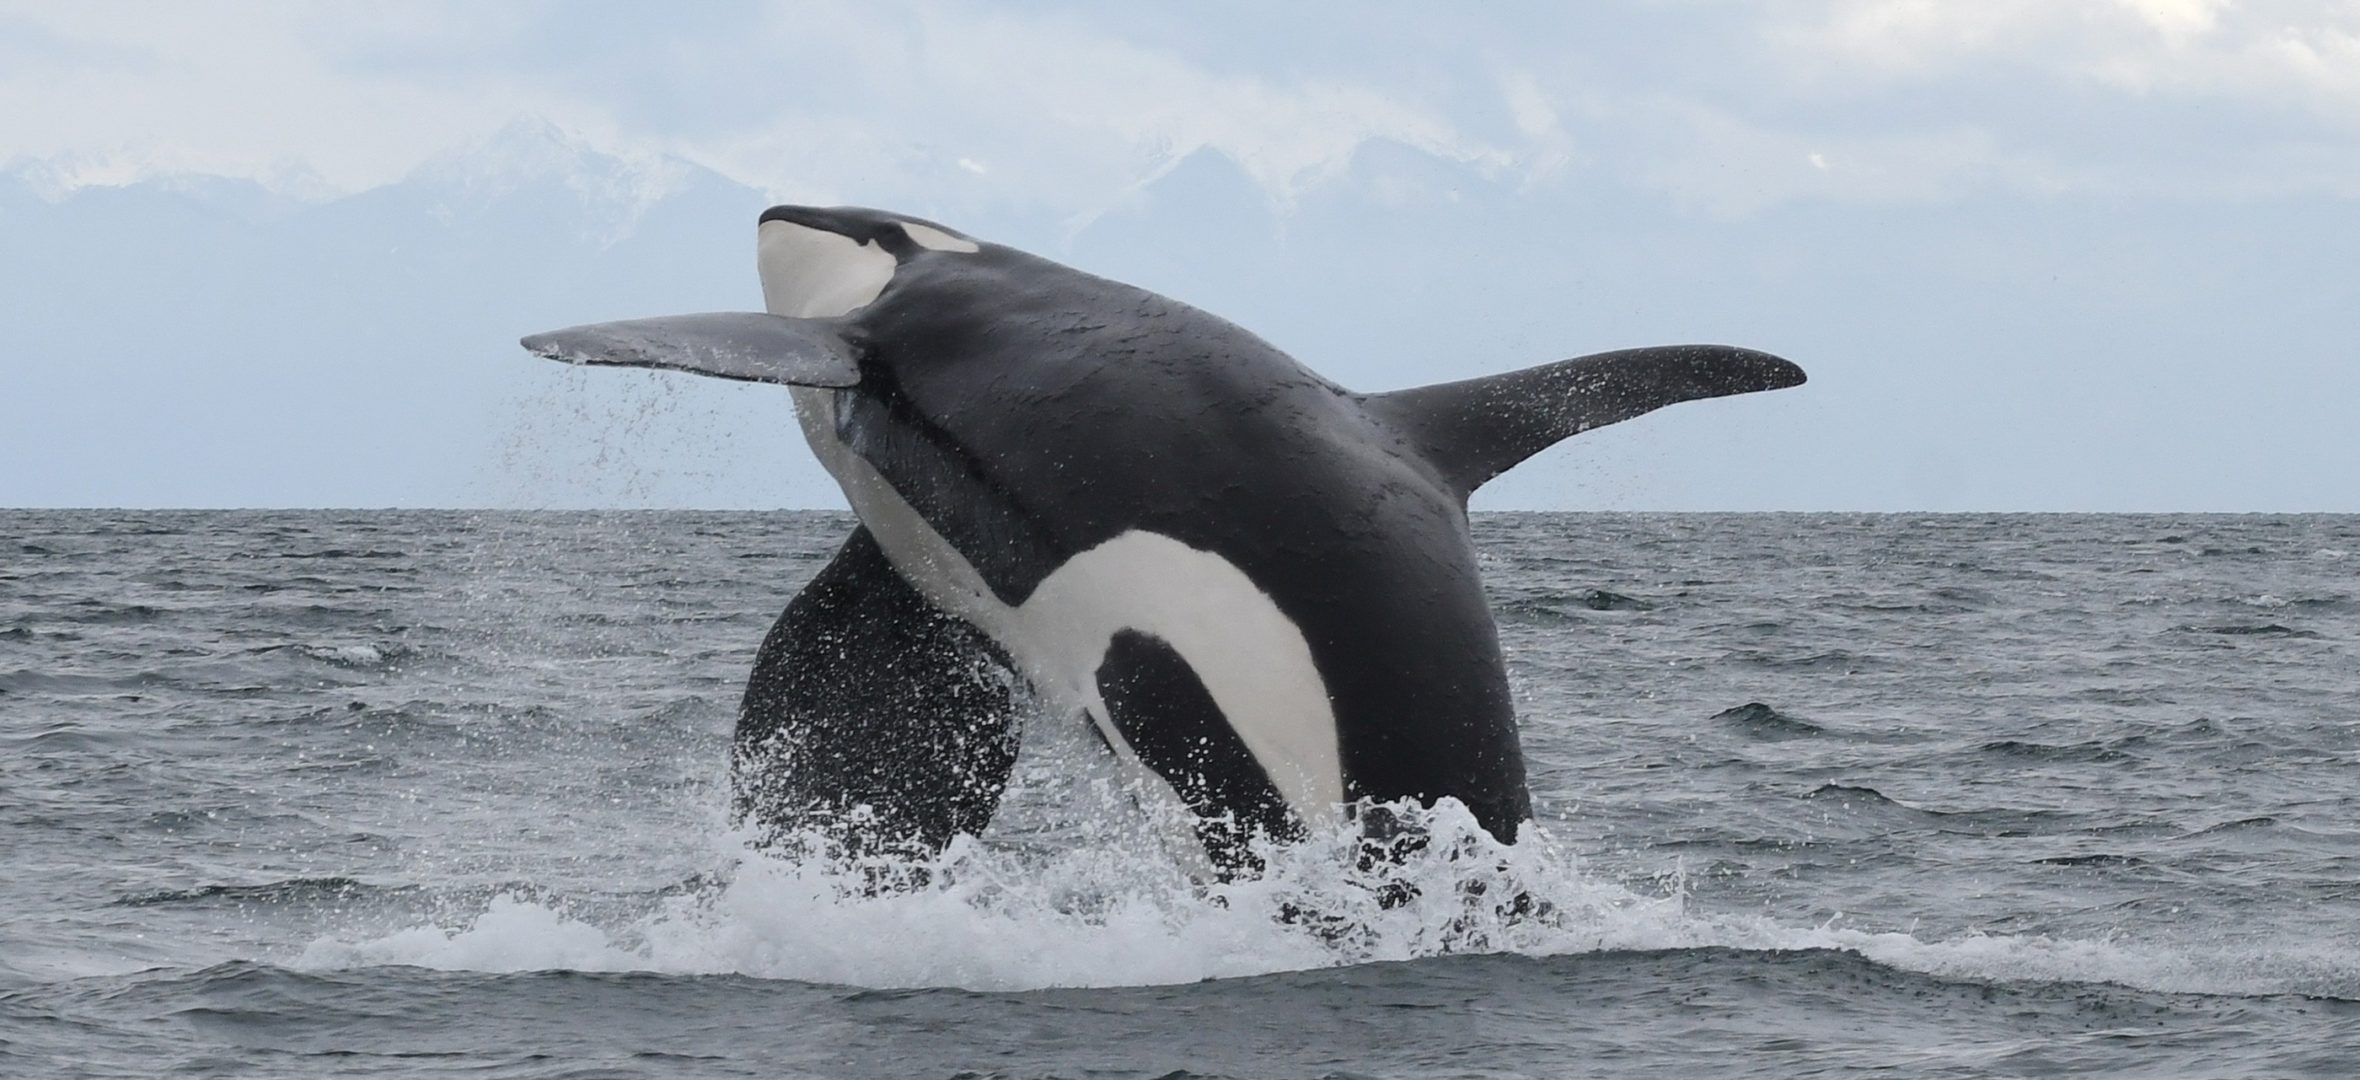 An orca breaching.